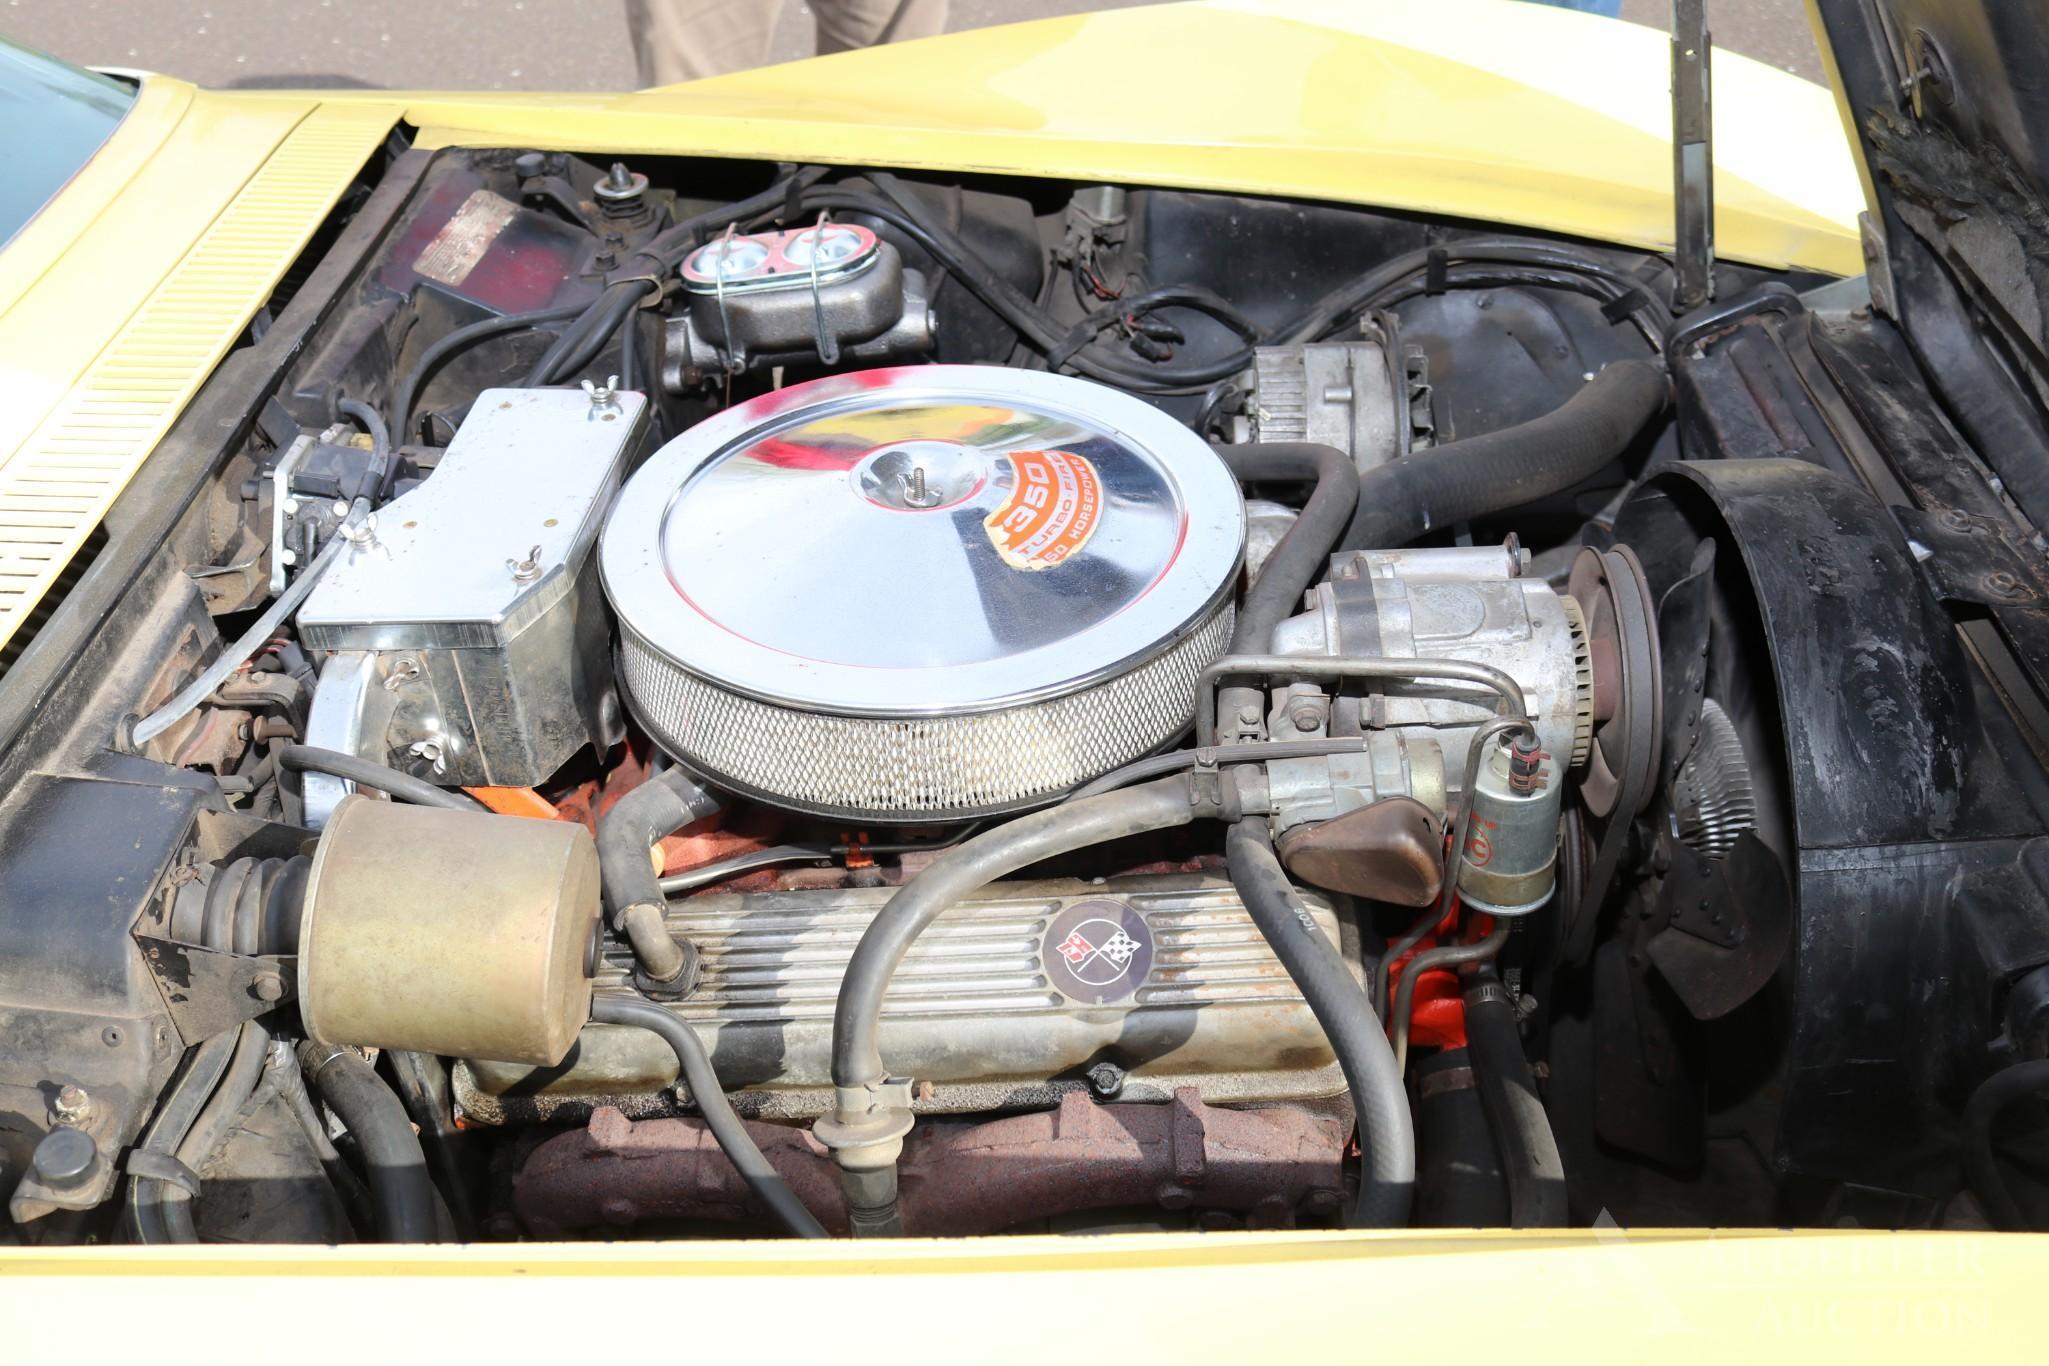 1969 Chevy Corvette